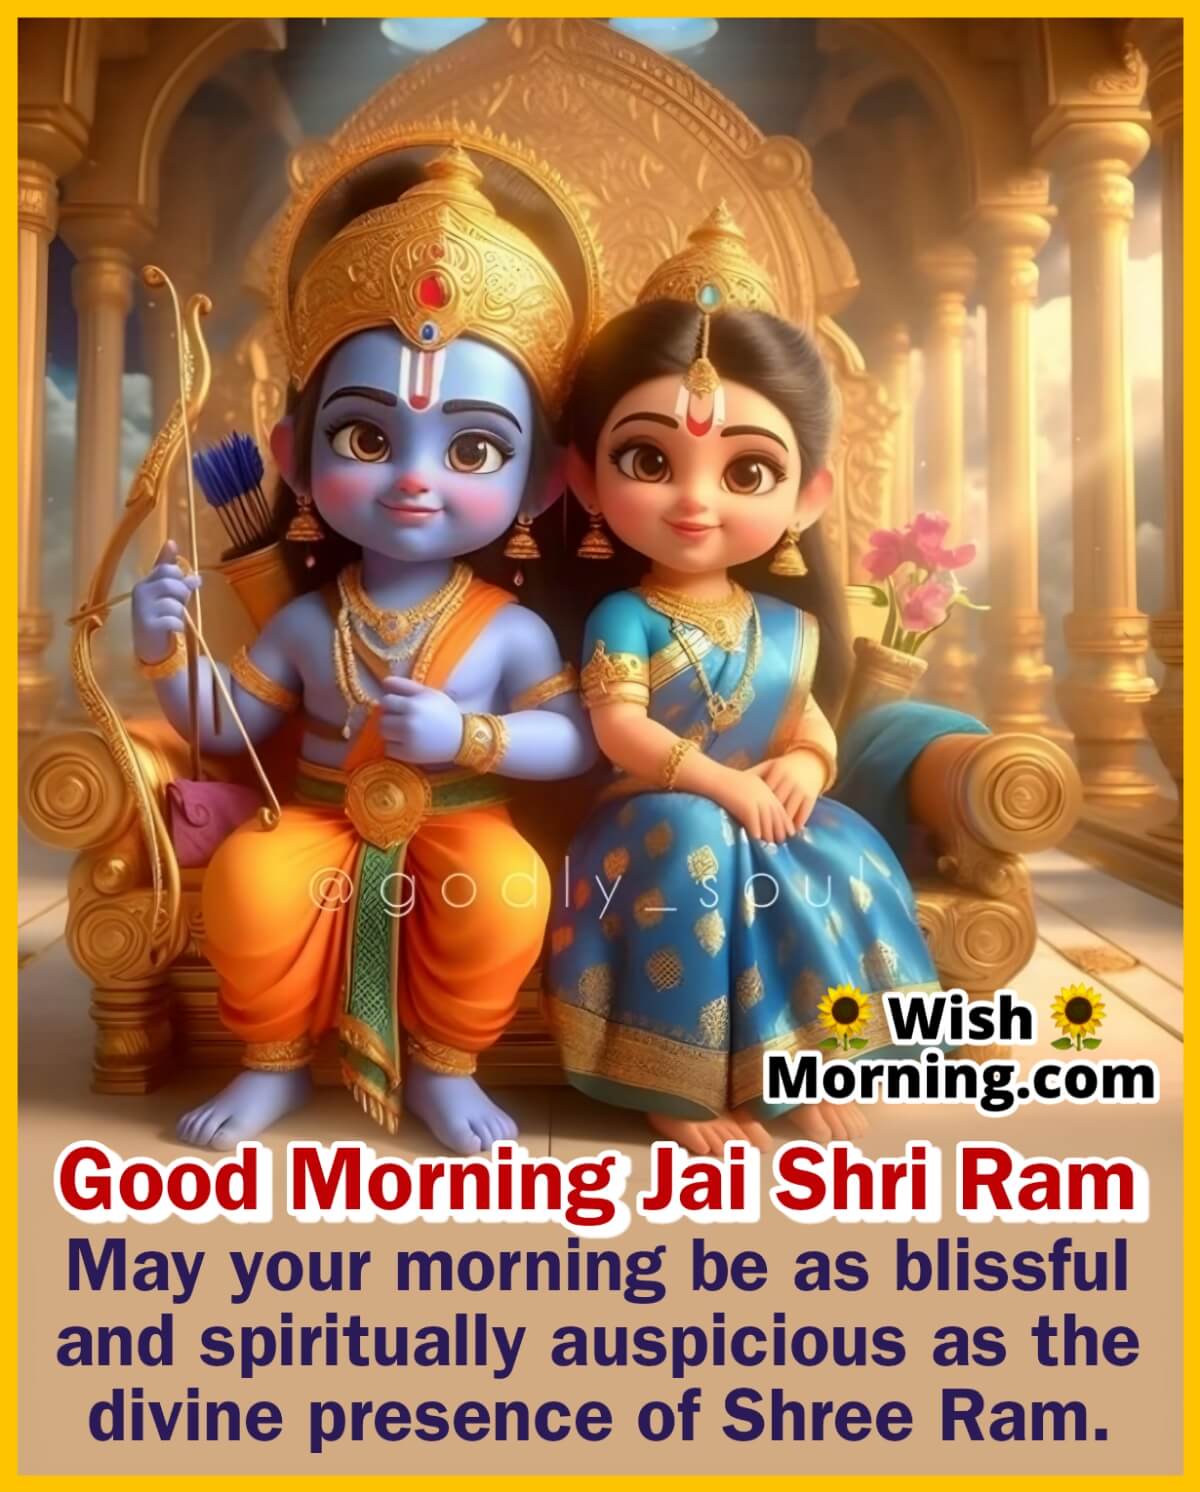 Good Morning Shree Ram Wish Image